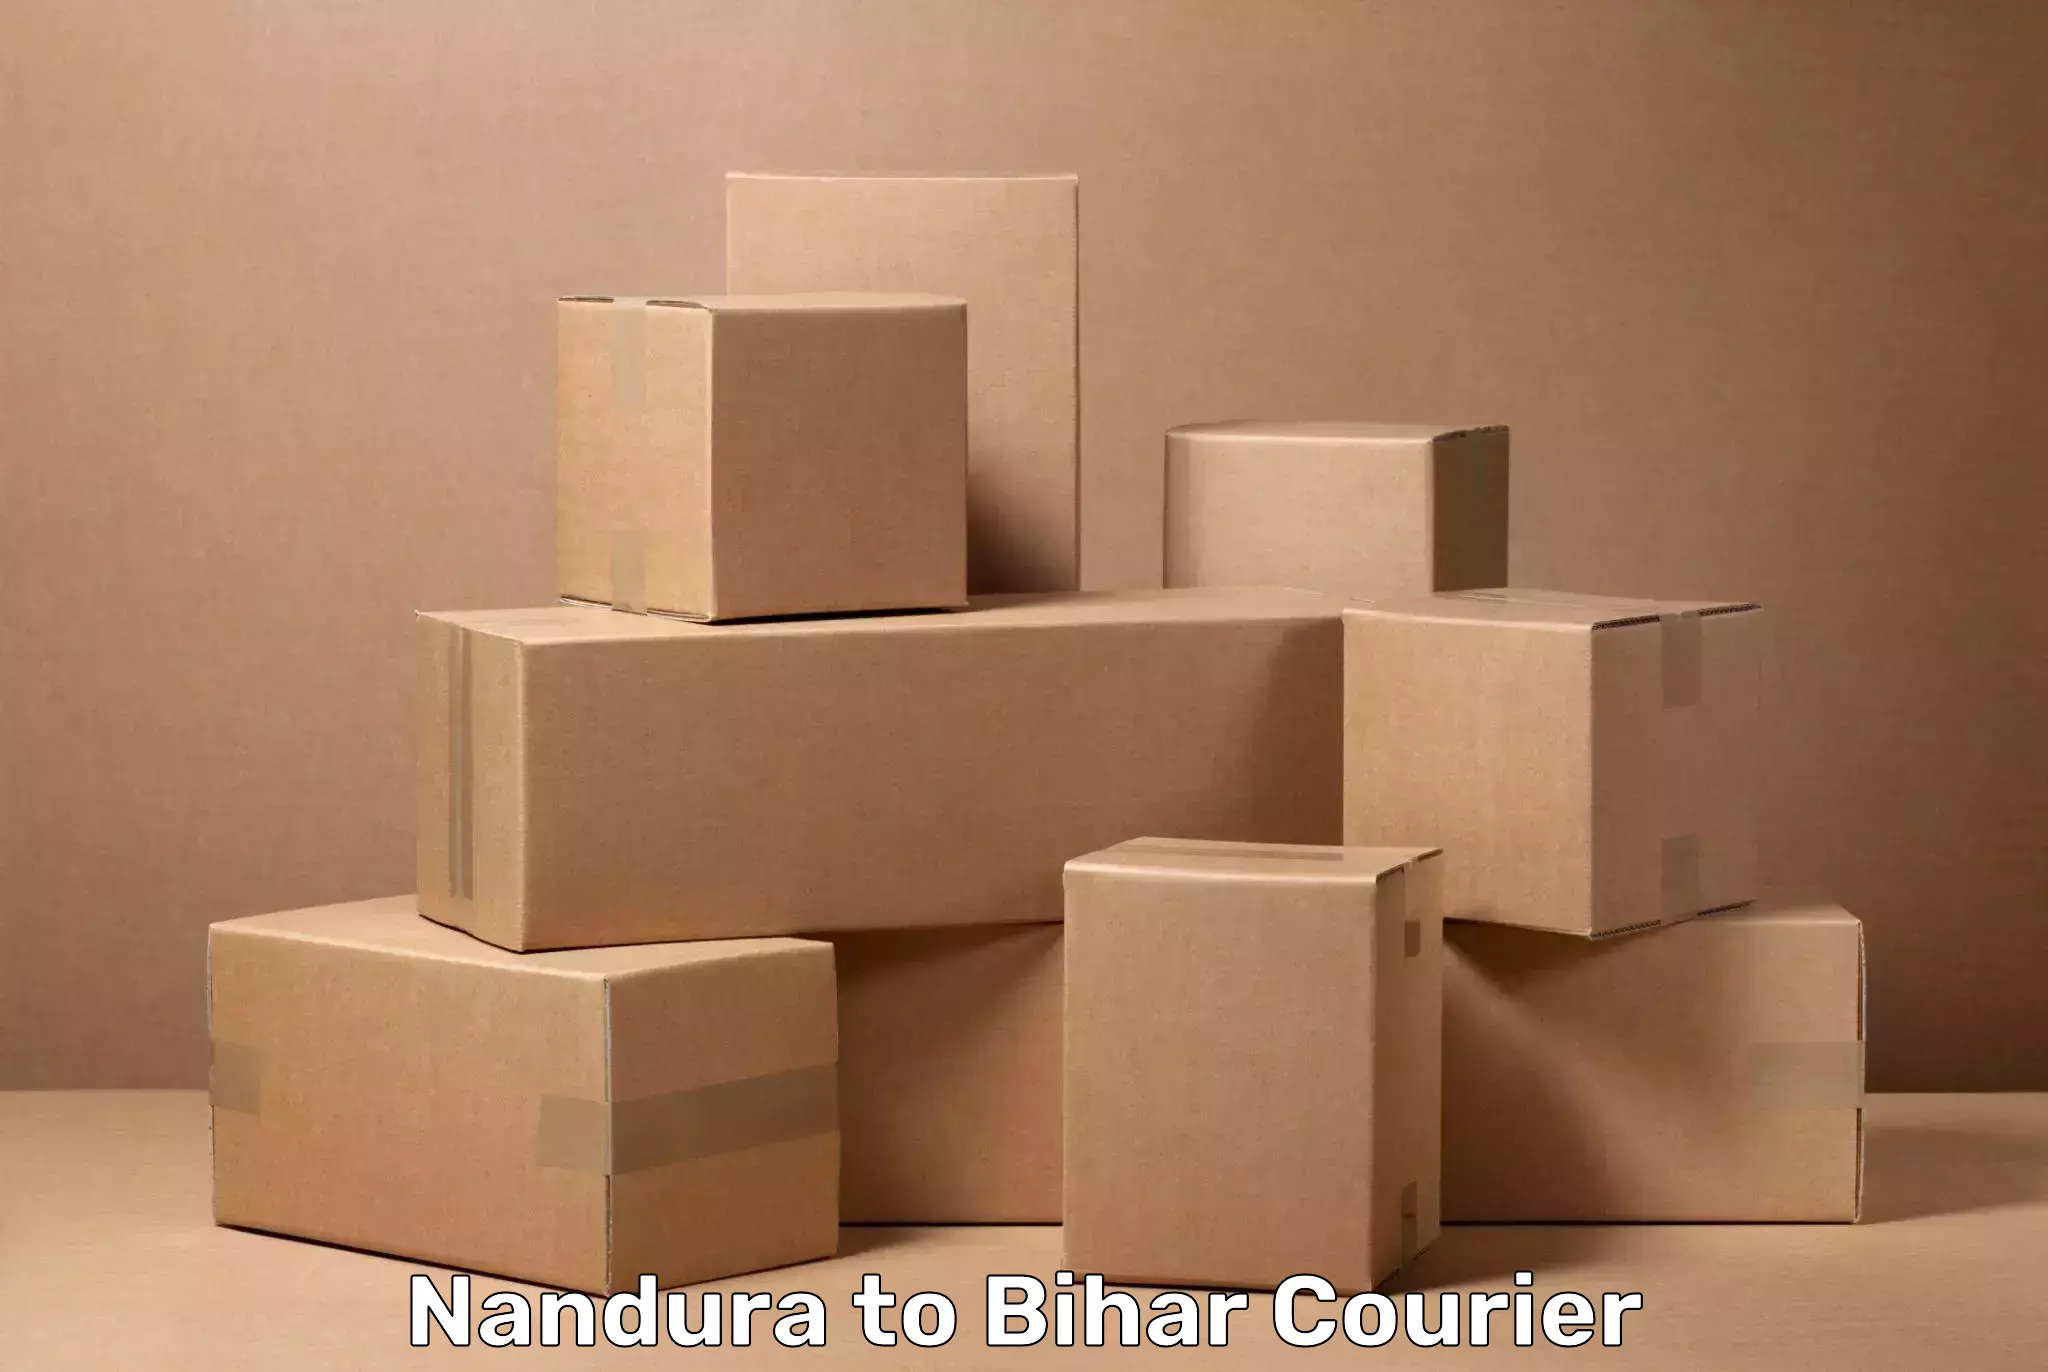 Unaccompanied luggage service Nandura to Bihar